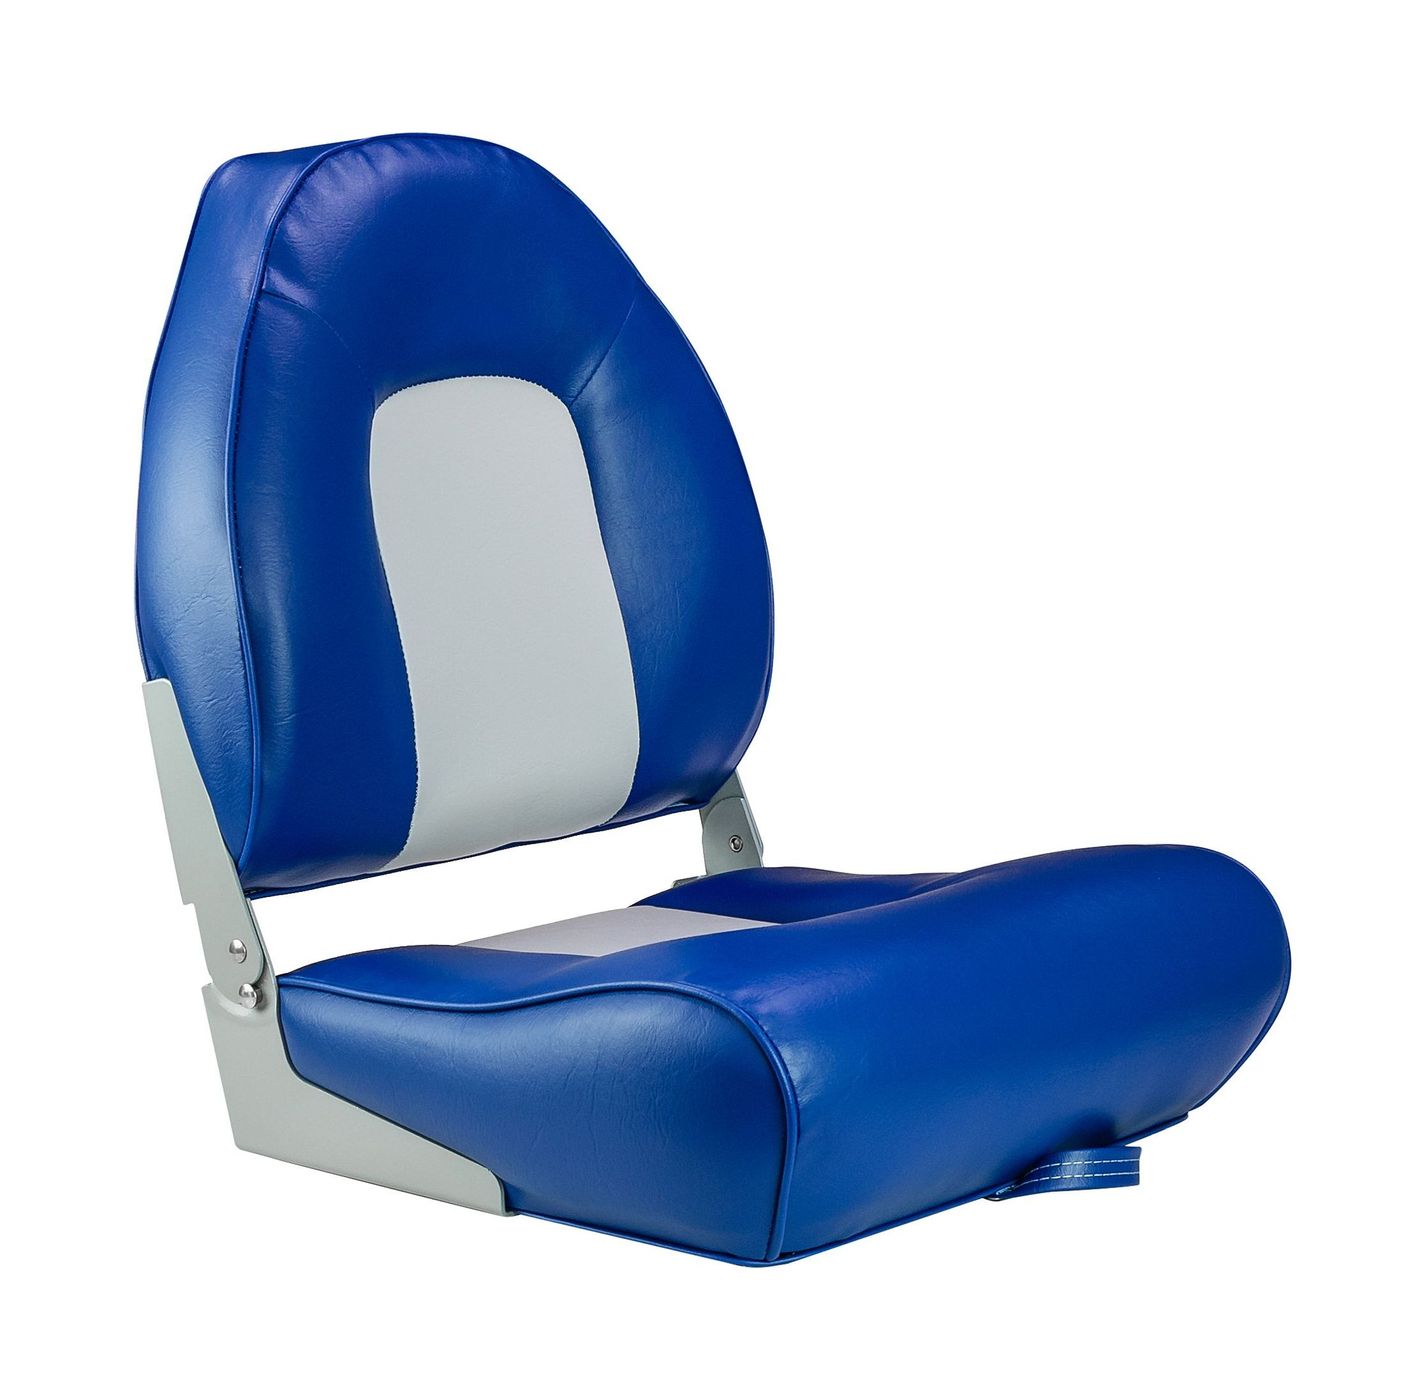 Кресло мягкое складное, обивка винил, цвет синий/серый, Marine Rocket 75116GB-MR кресло мягкое складное classic обивка винил серый синий marine rocket 75102gb mr